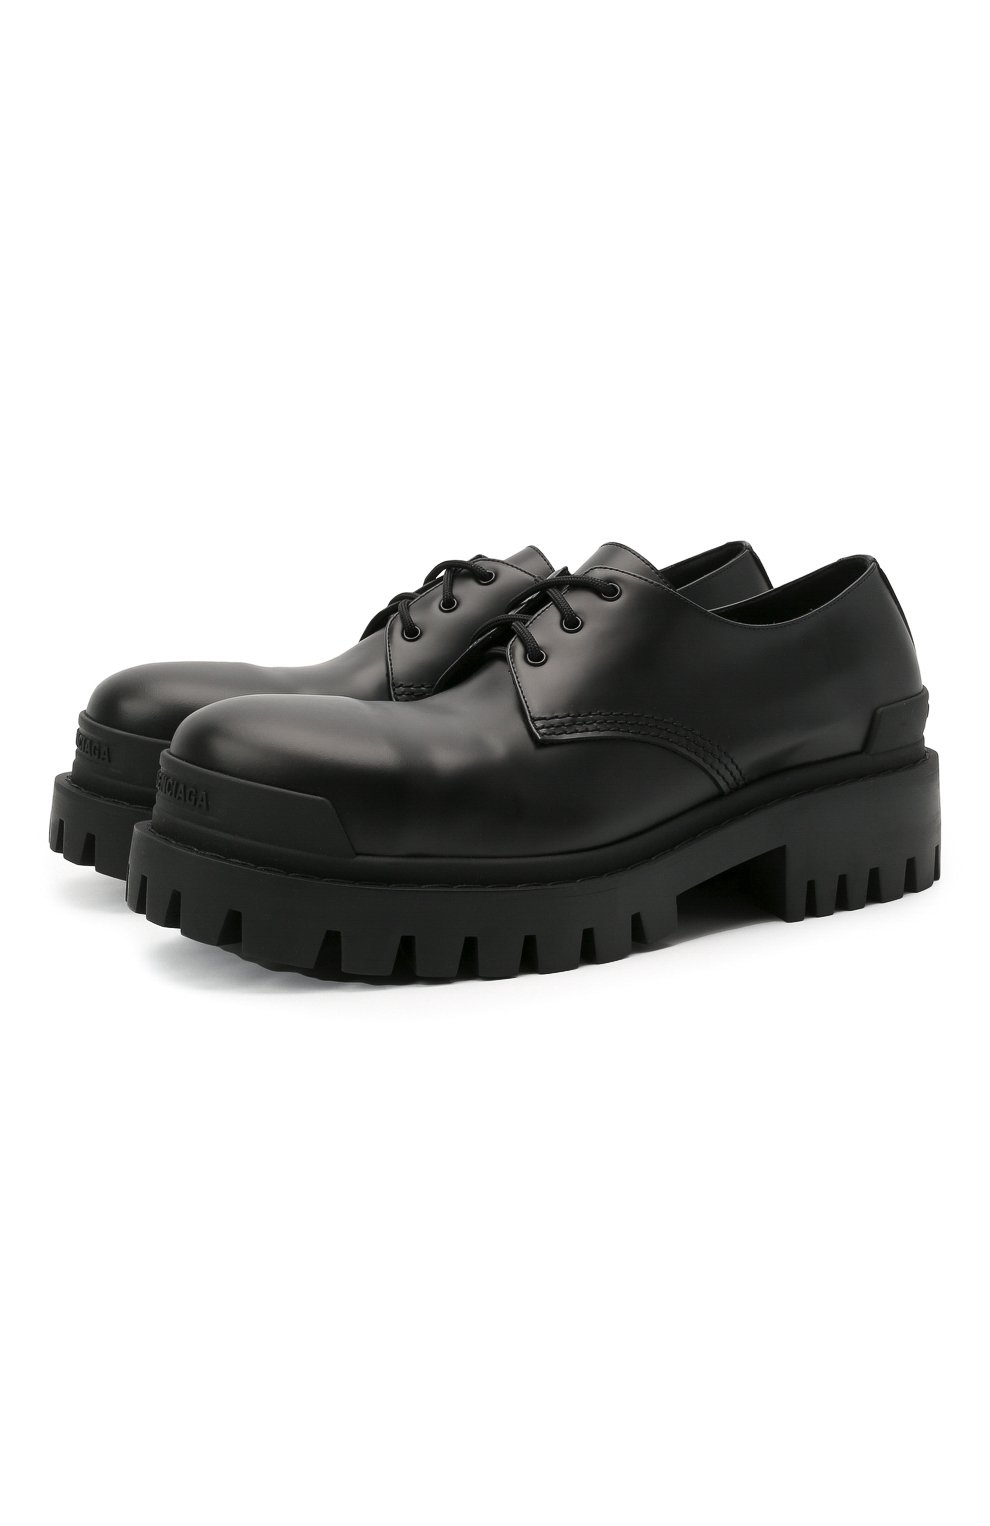 Мужские черные кожаные ботинки strike BALENCIAGA купить в интернет-магазинеЦУМ, арт. 600600/WA960